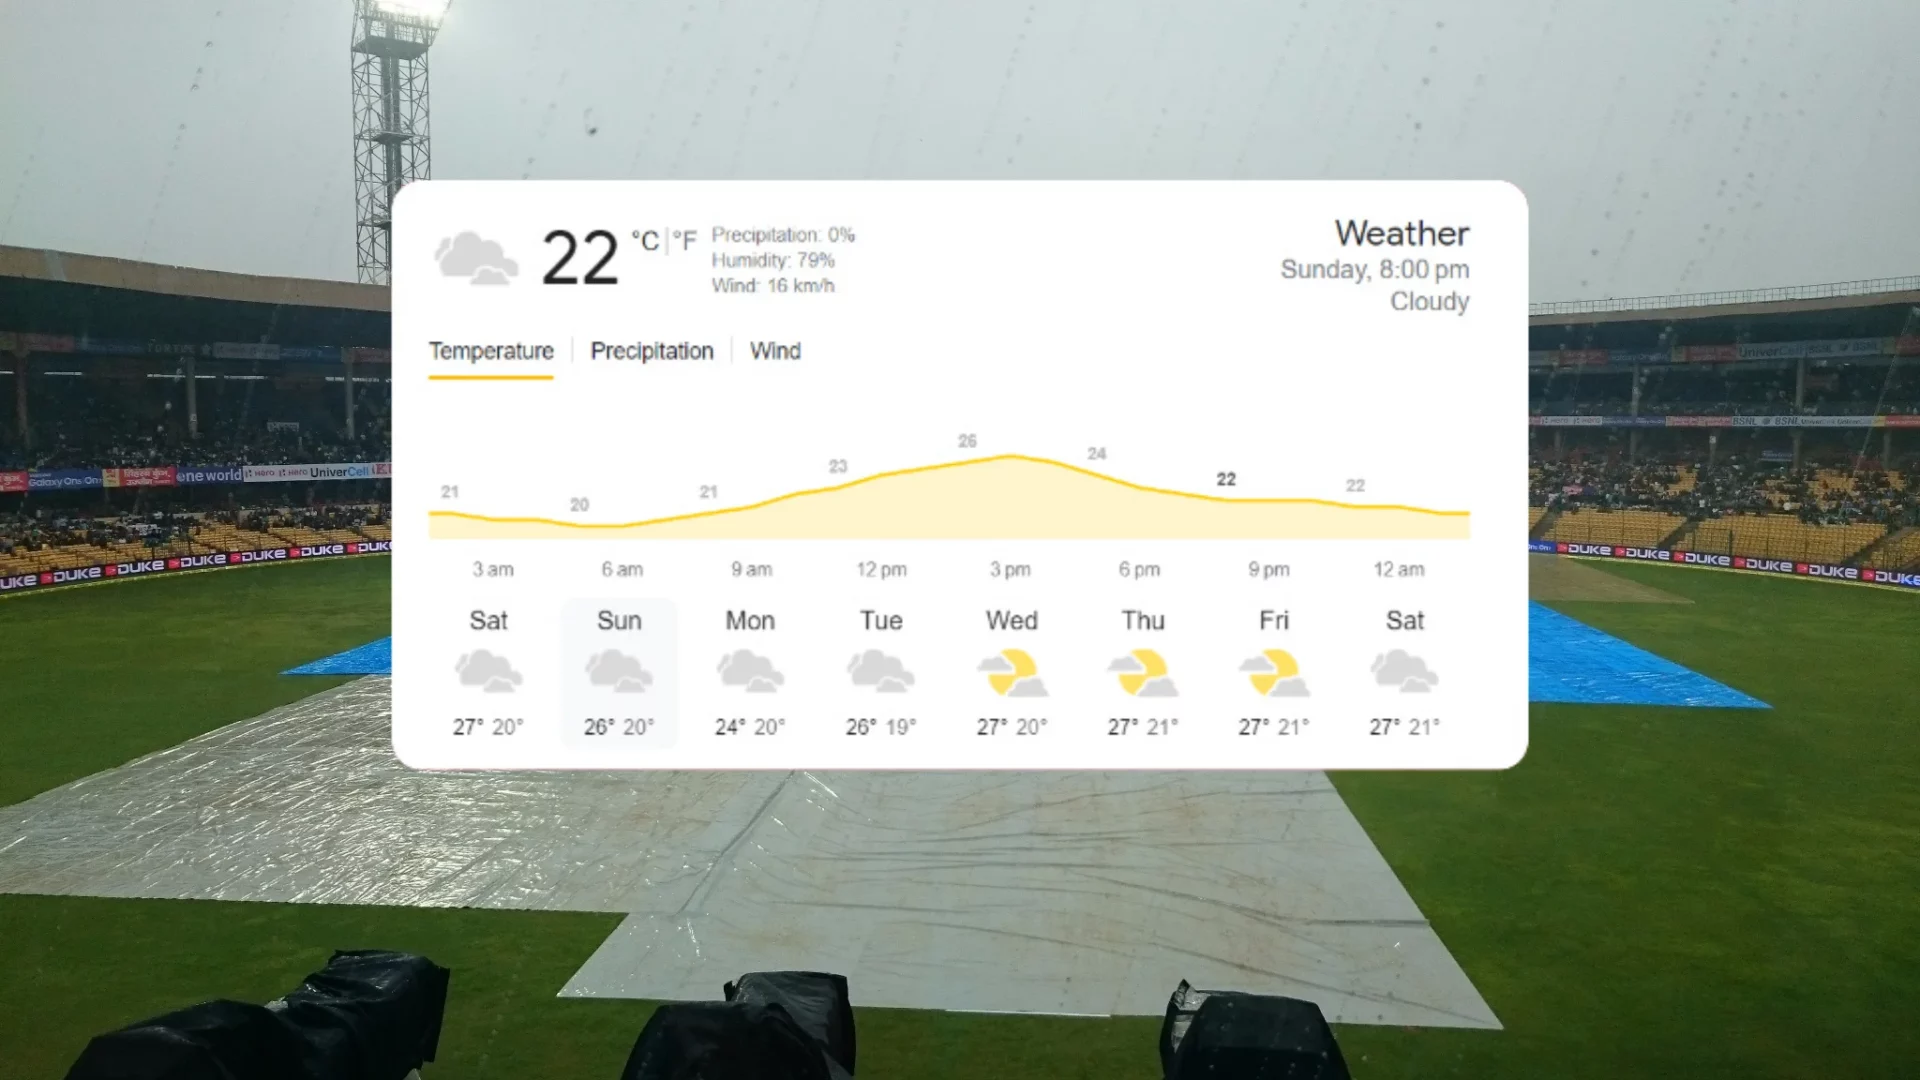 Bangalore weather forecast